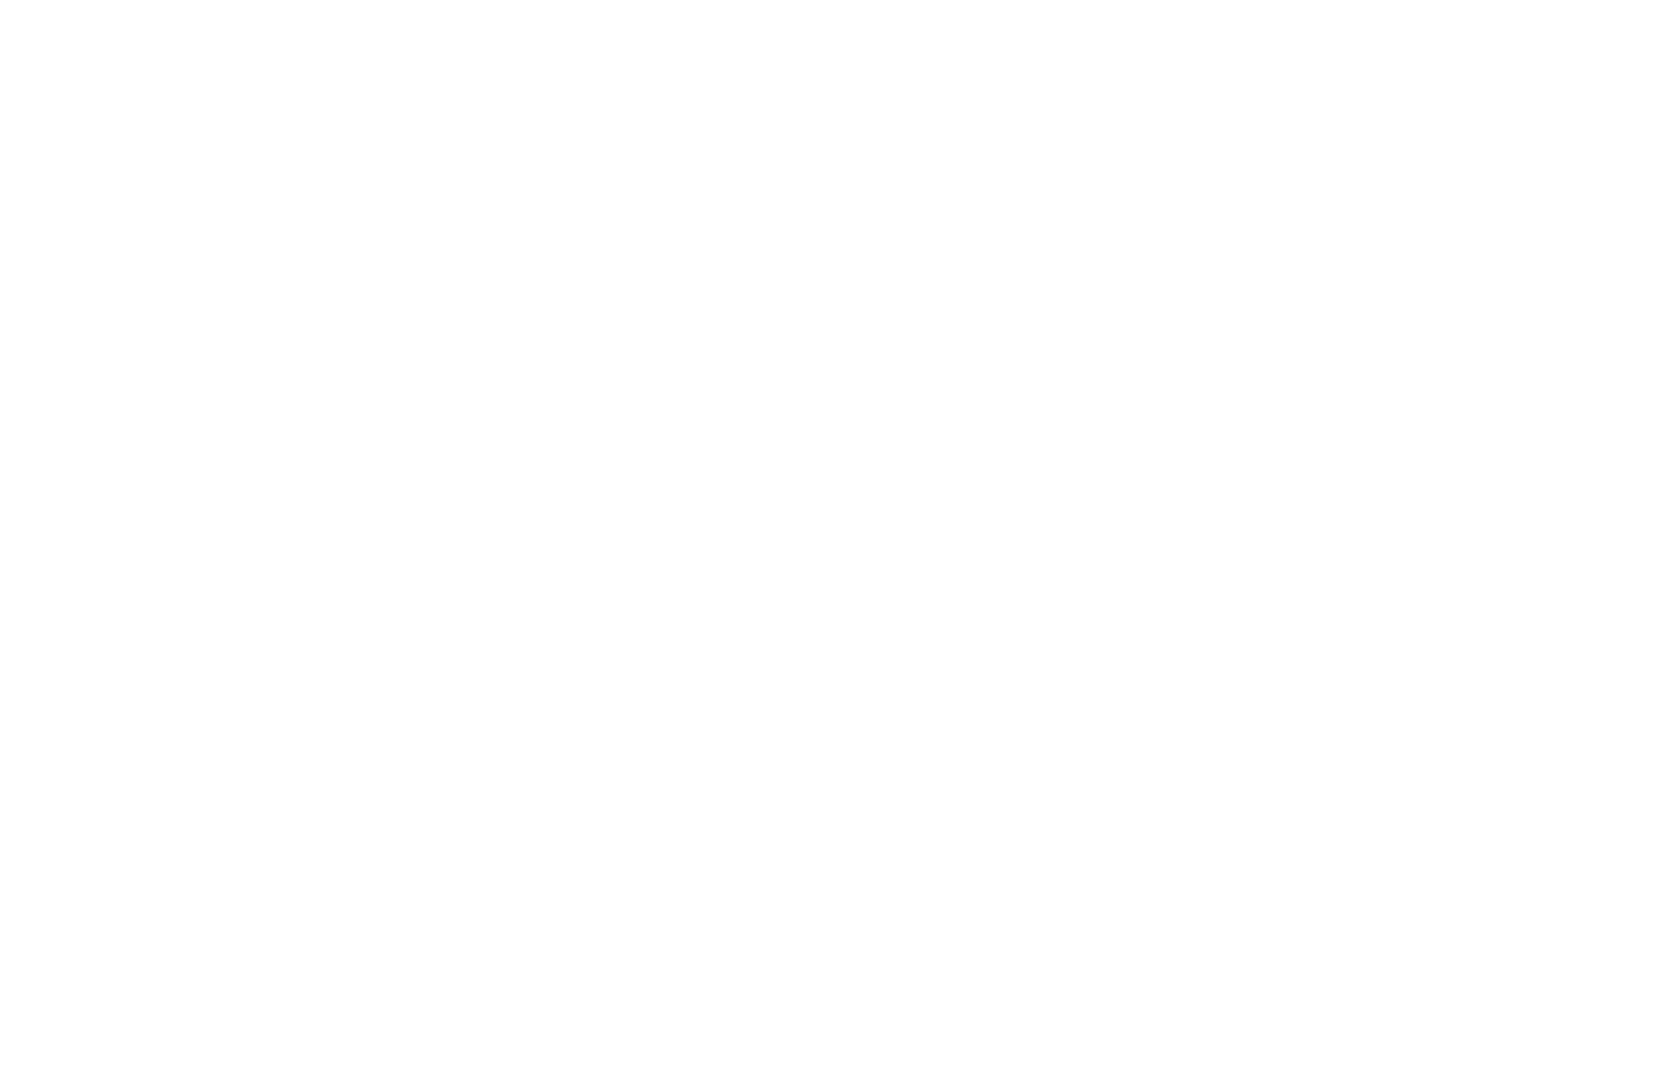 Типы детектируемых сигналов и размер зон взаимодействия пучка электронов (электронного зонда) с образцом в камере РЭМ. Схематическое изображение поперечного сечения зоны взаимодействия